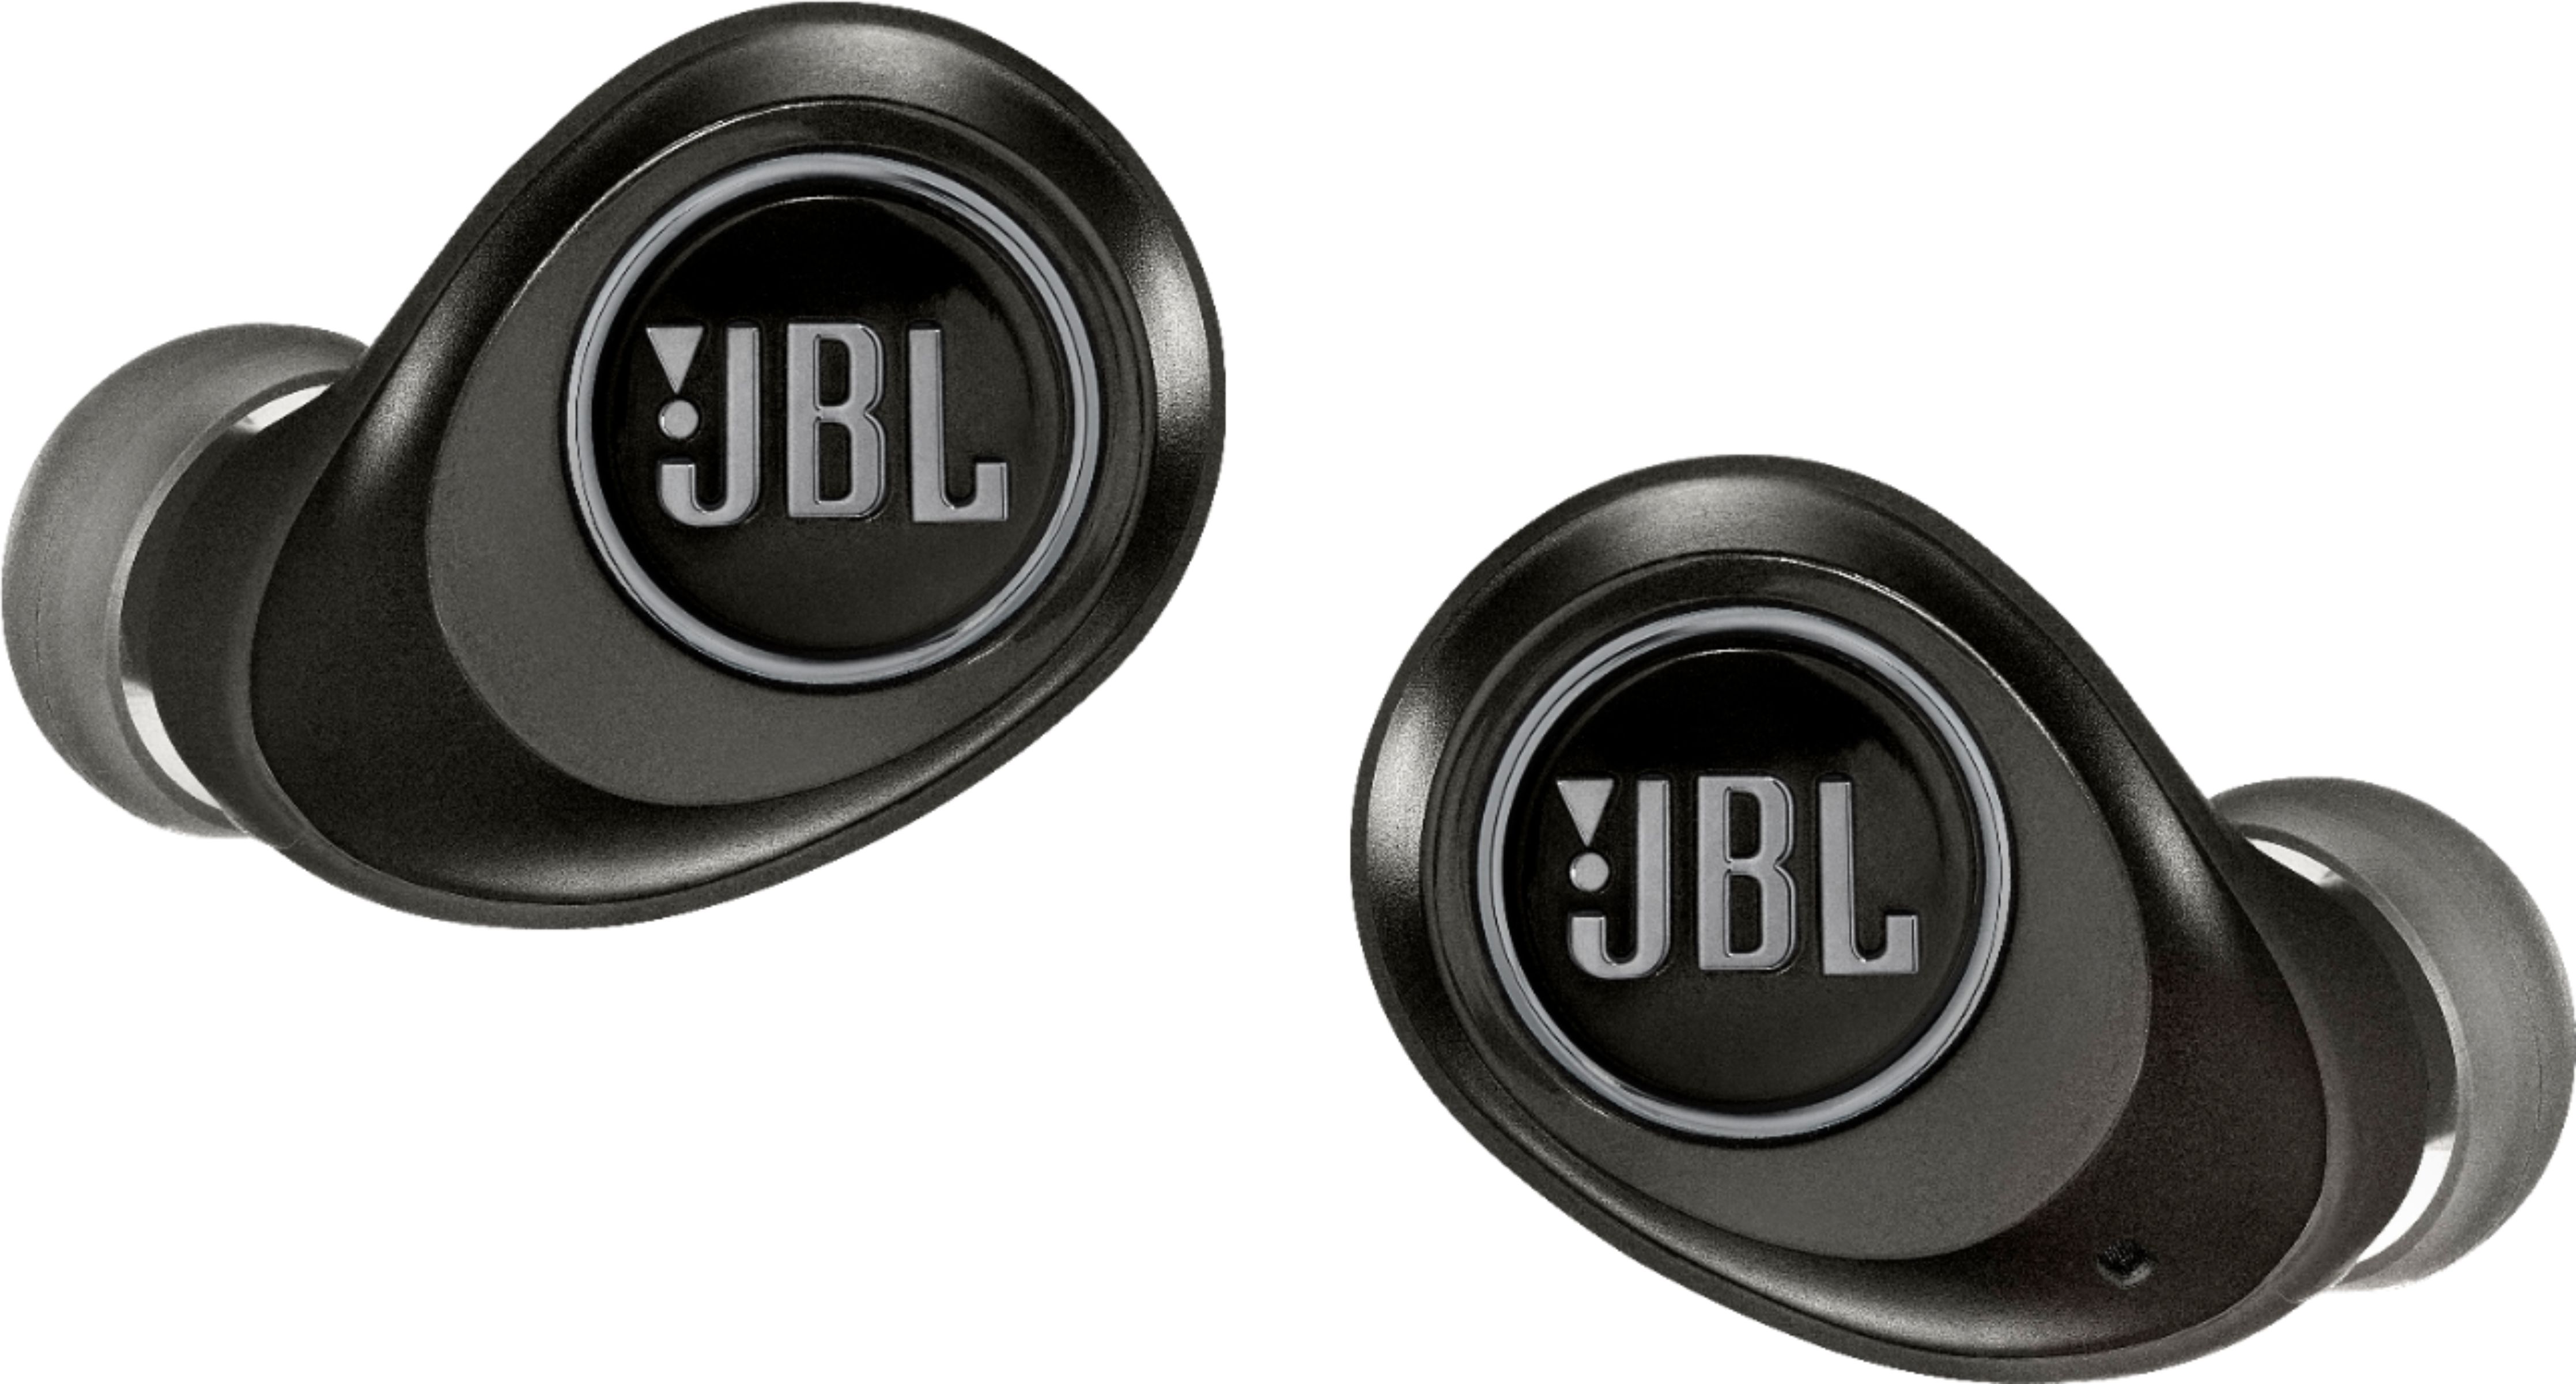 JBL FREE True Wireless In-Ear Headphones Gen 2 Black - Best Buy